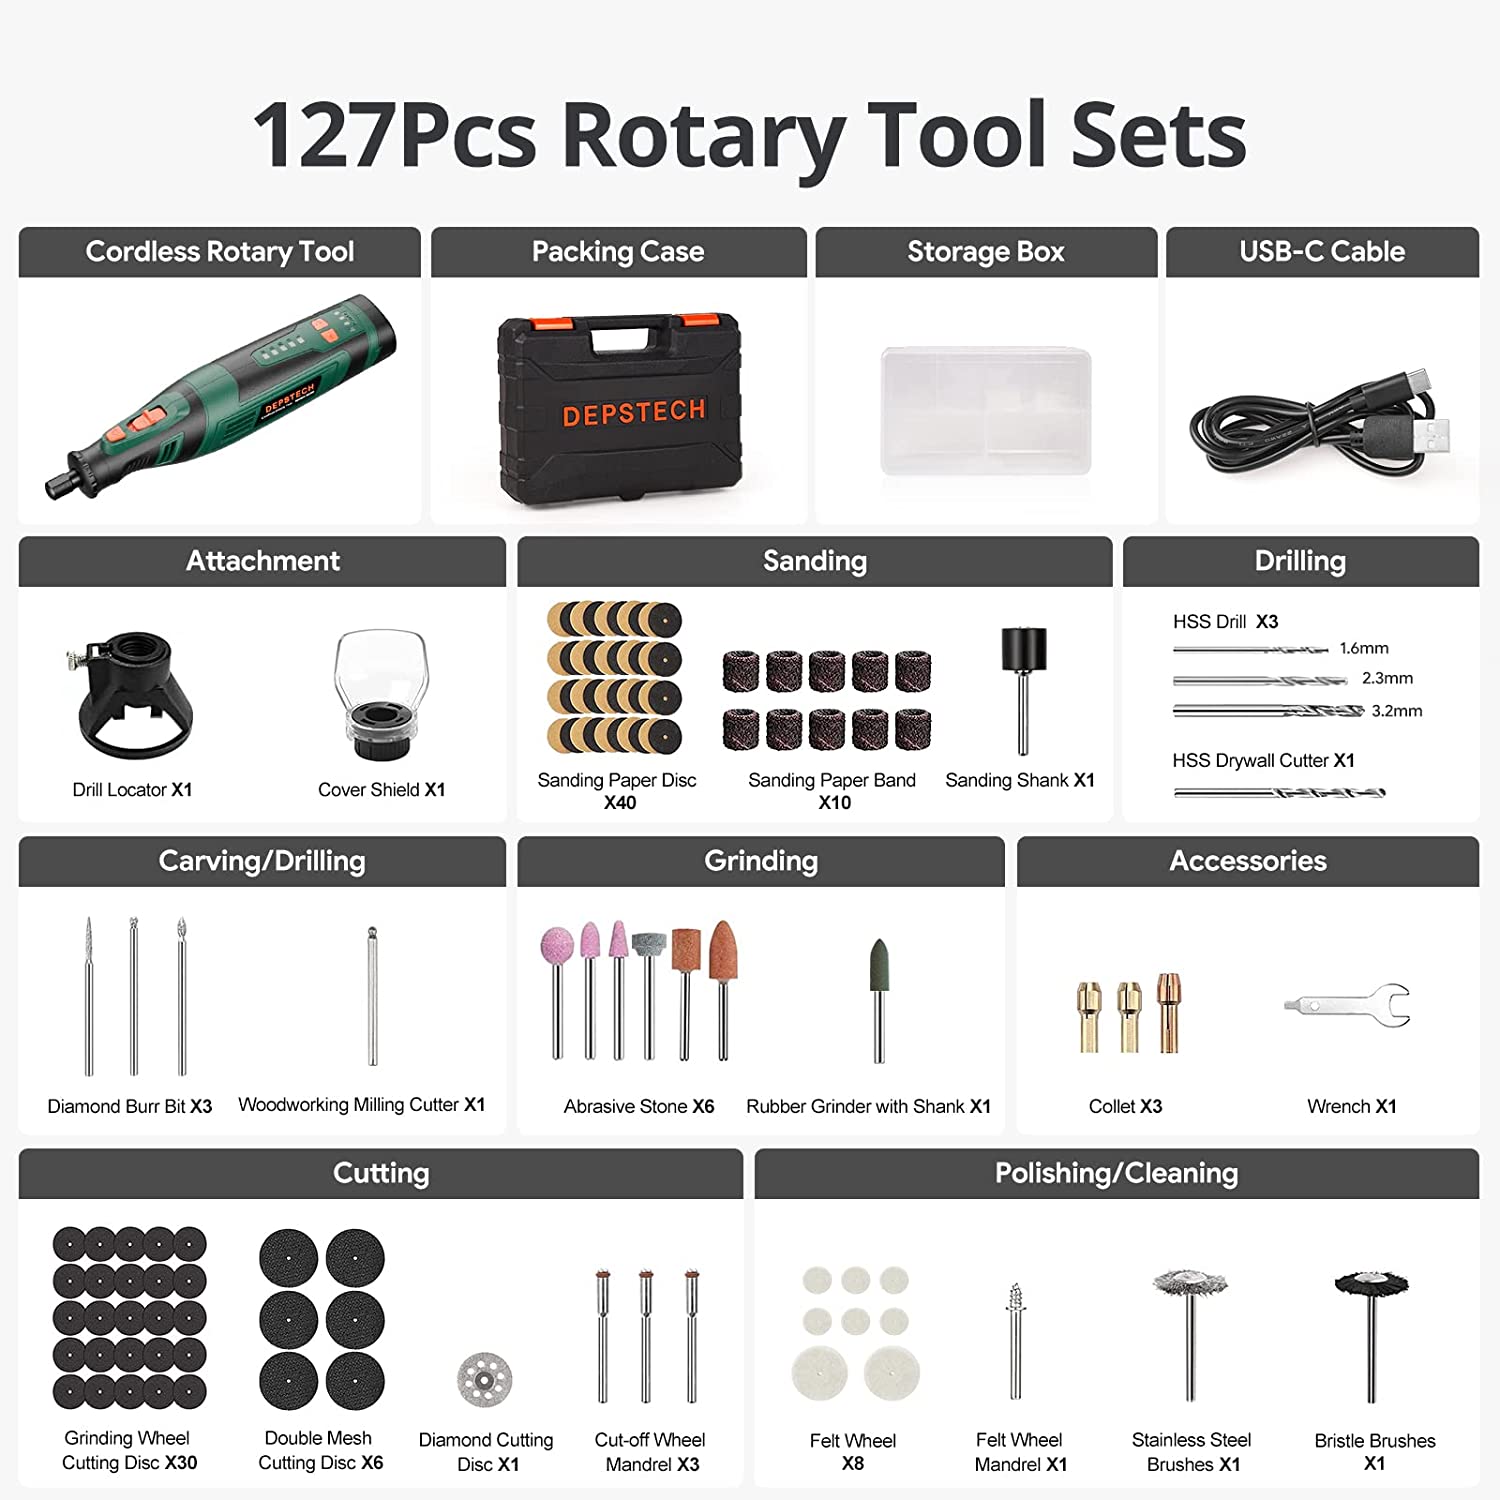 https://depstech.com/cdn/shop/files/depstech-dc08-cordless-rotary-tool-accessories-kit_1800x1800.jpg?v=1684823480